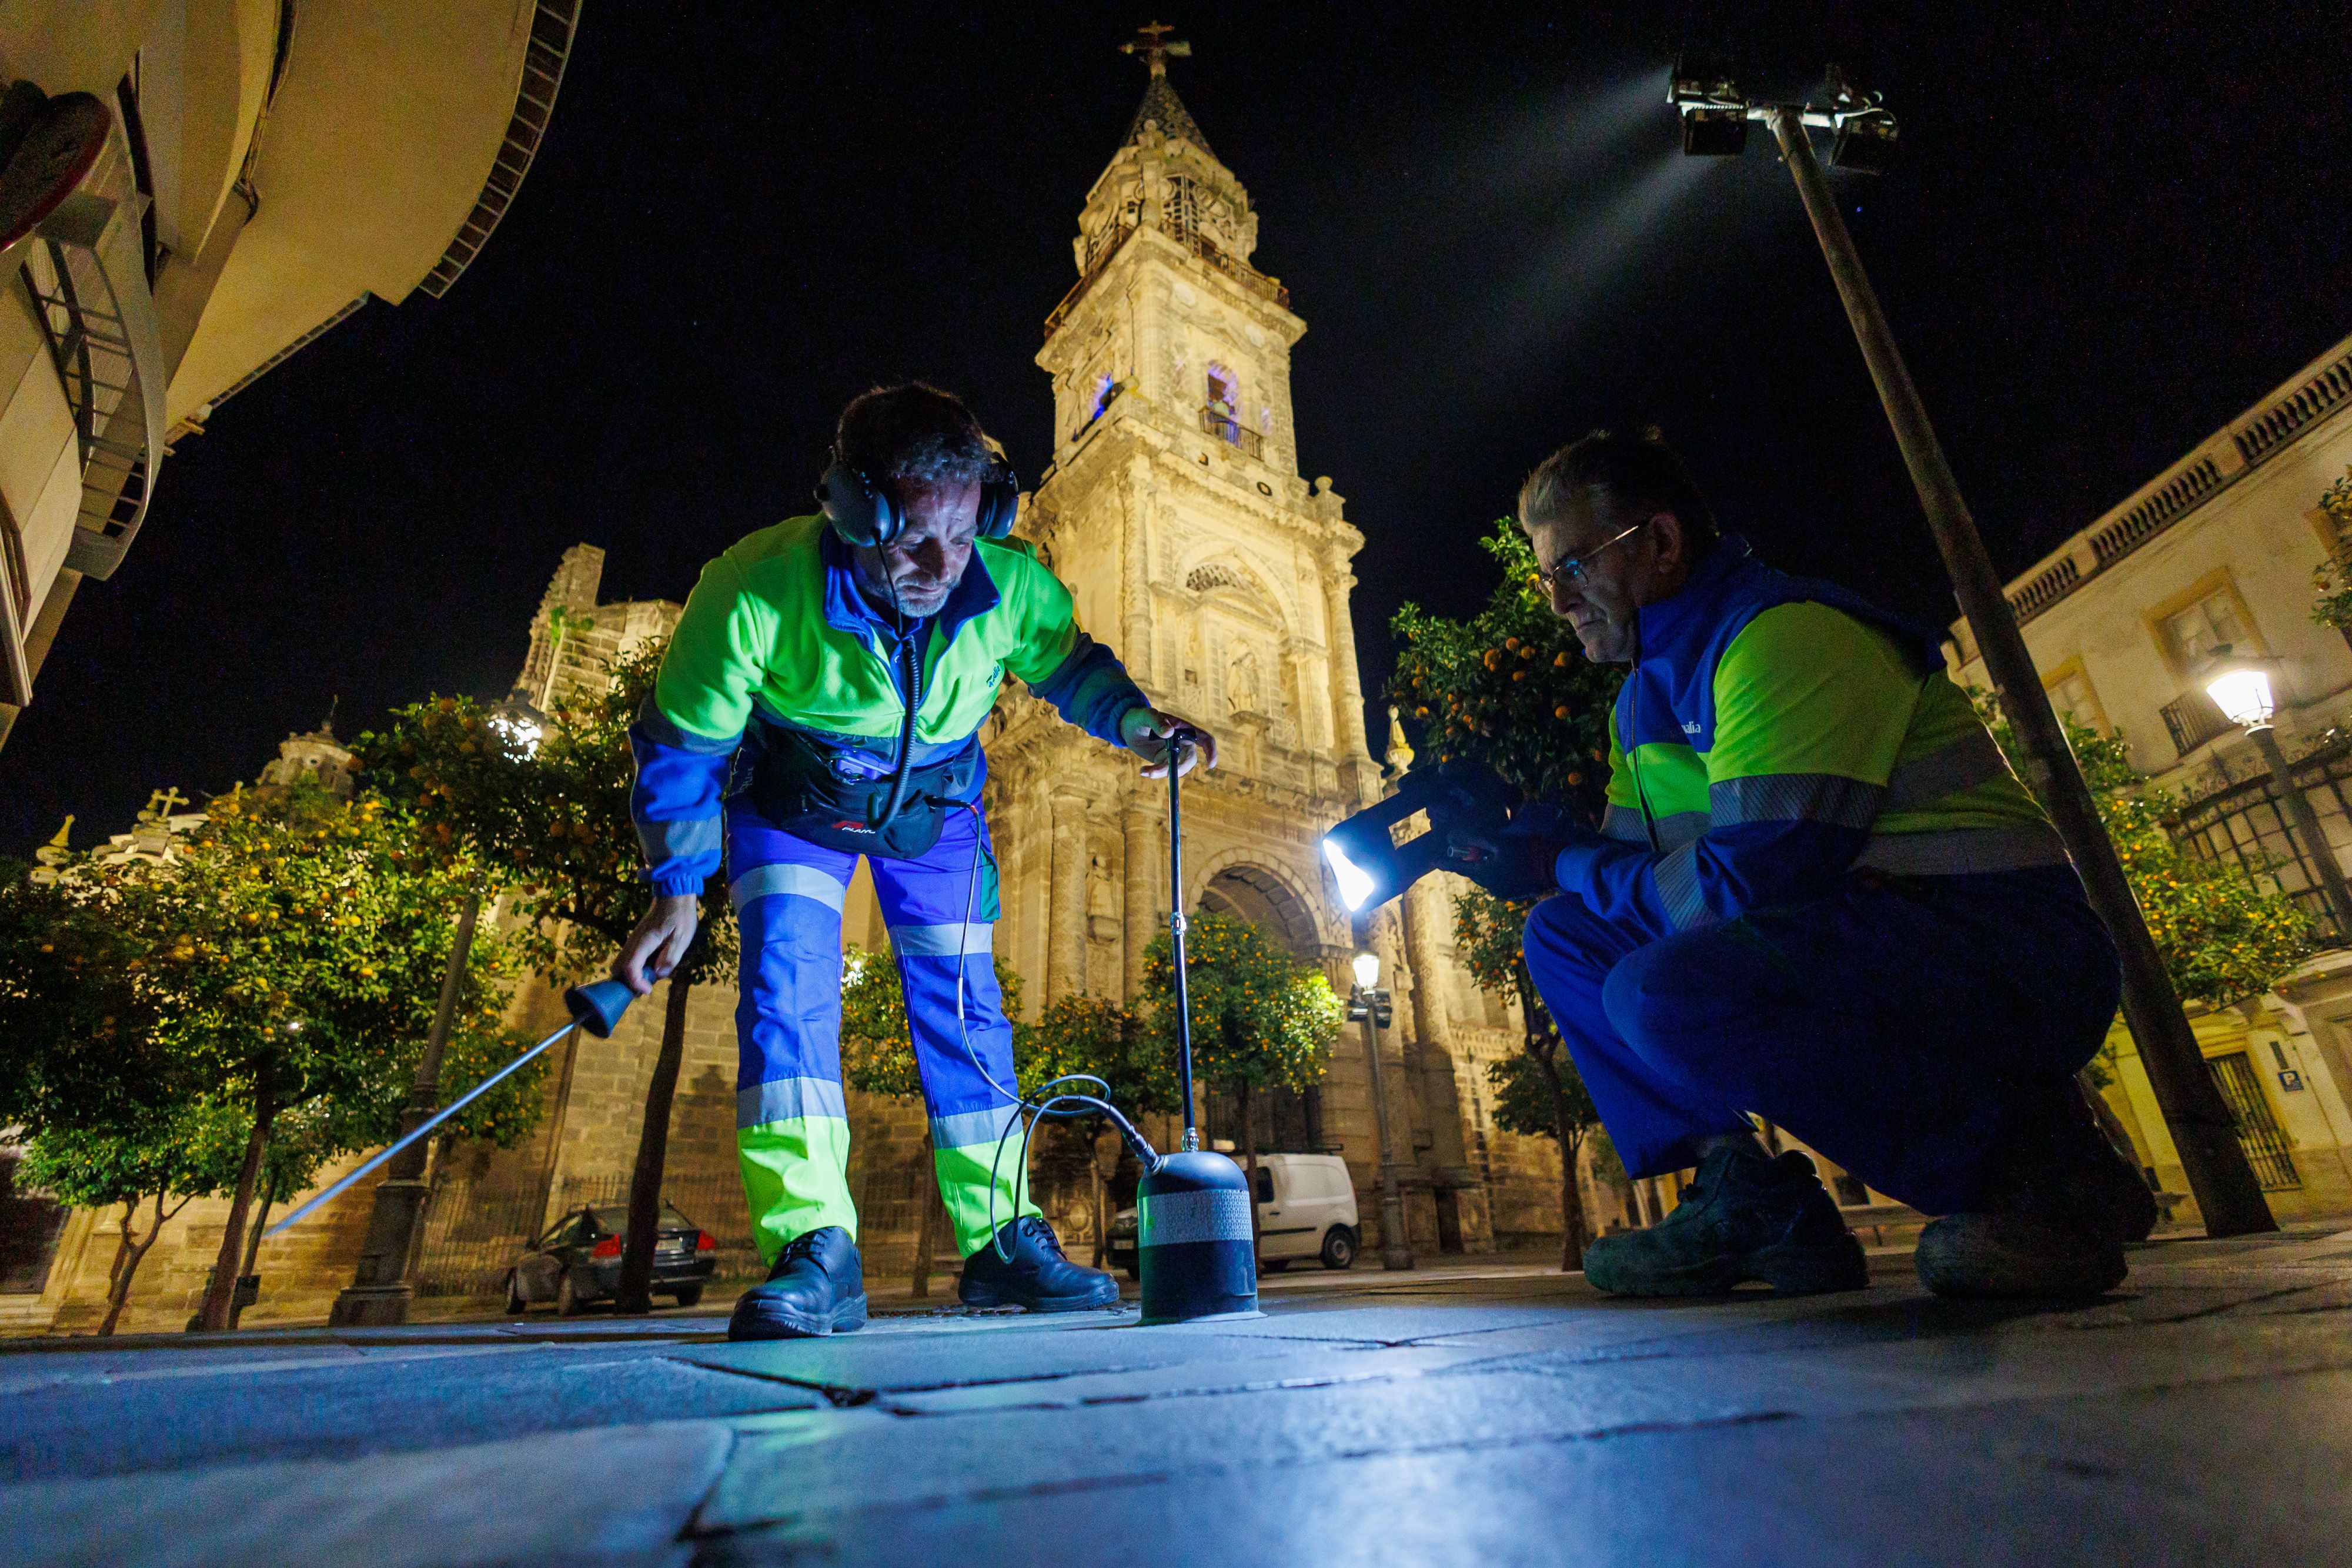 Javier y Alfonso, ante la imponente Iglesia de San Miguel, a medianoche en Jerez, 'auscultando' el subsuelo en busca de fugas de agua en plena sequía.